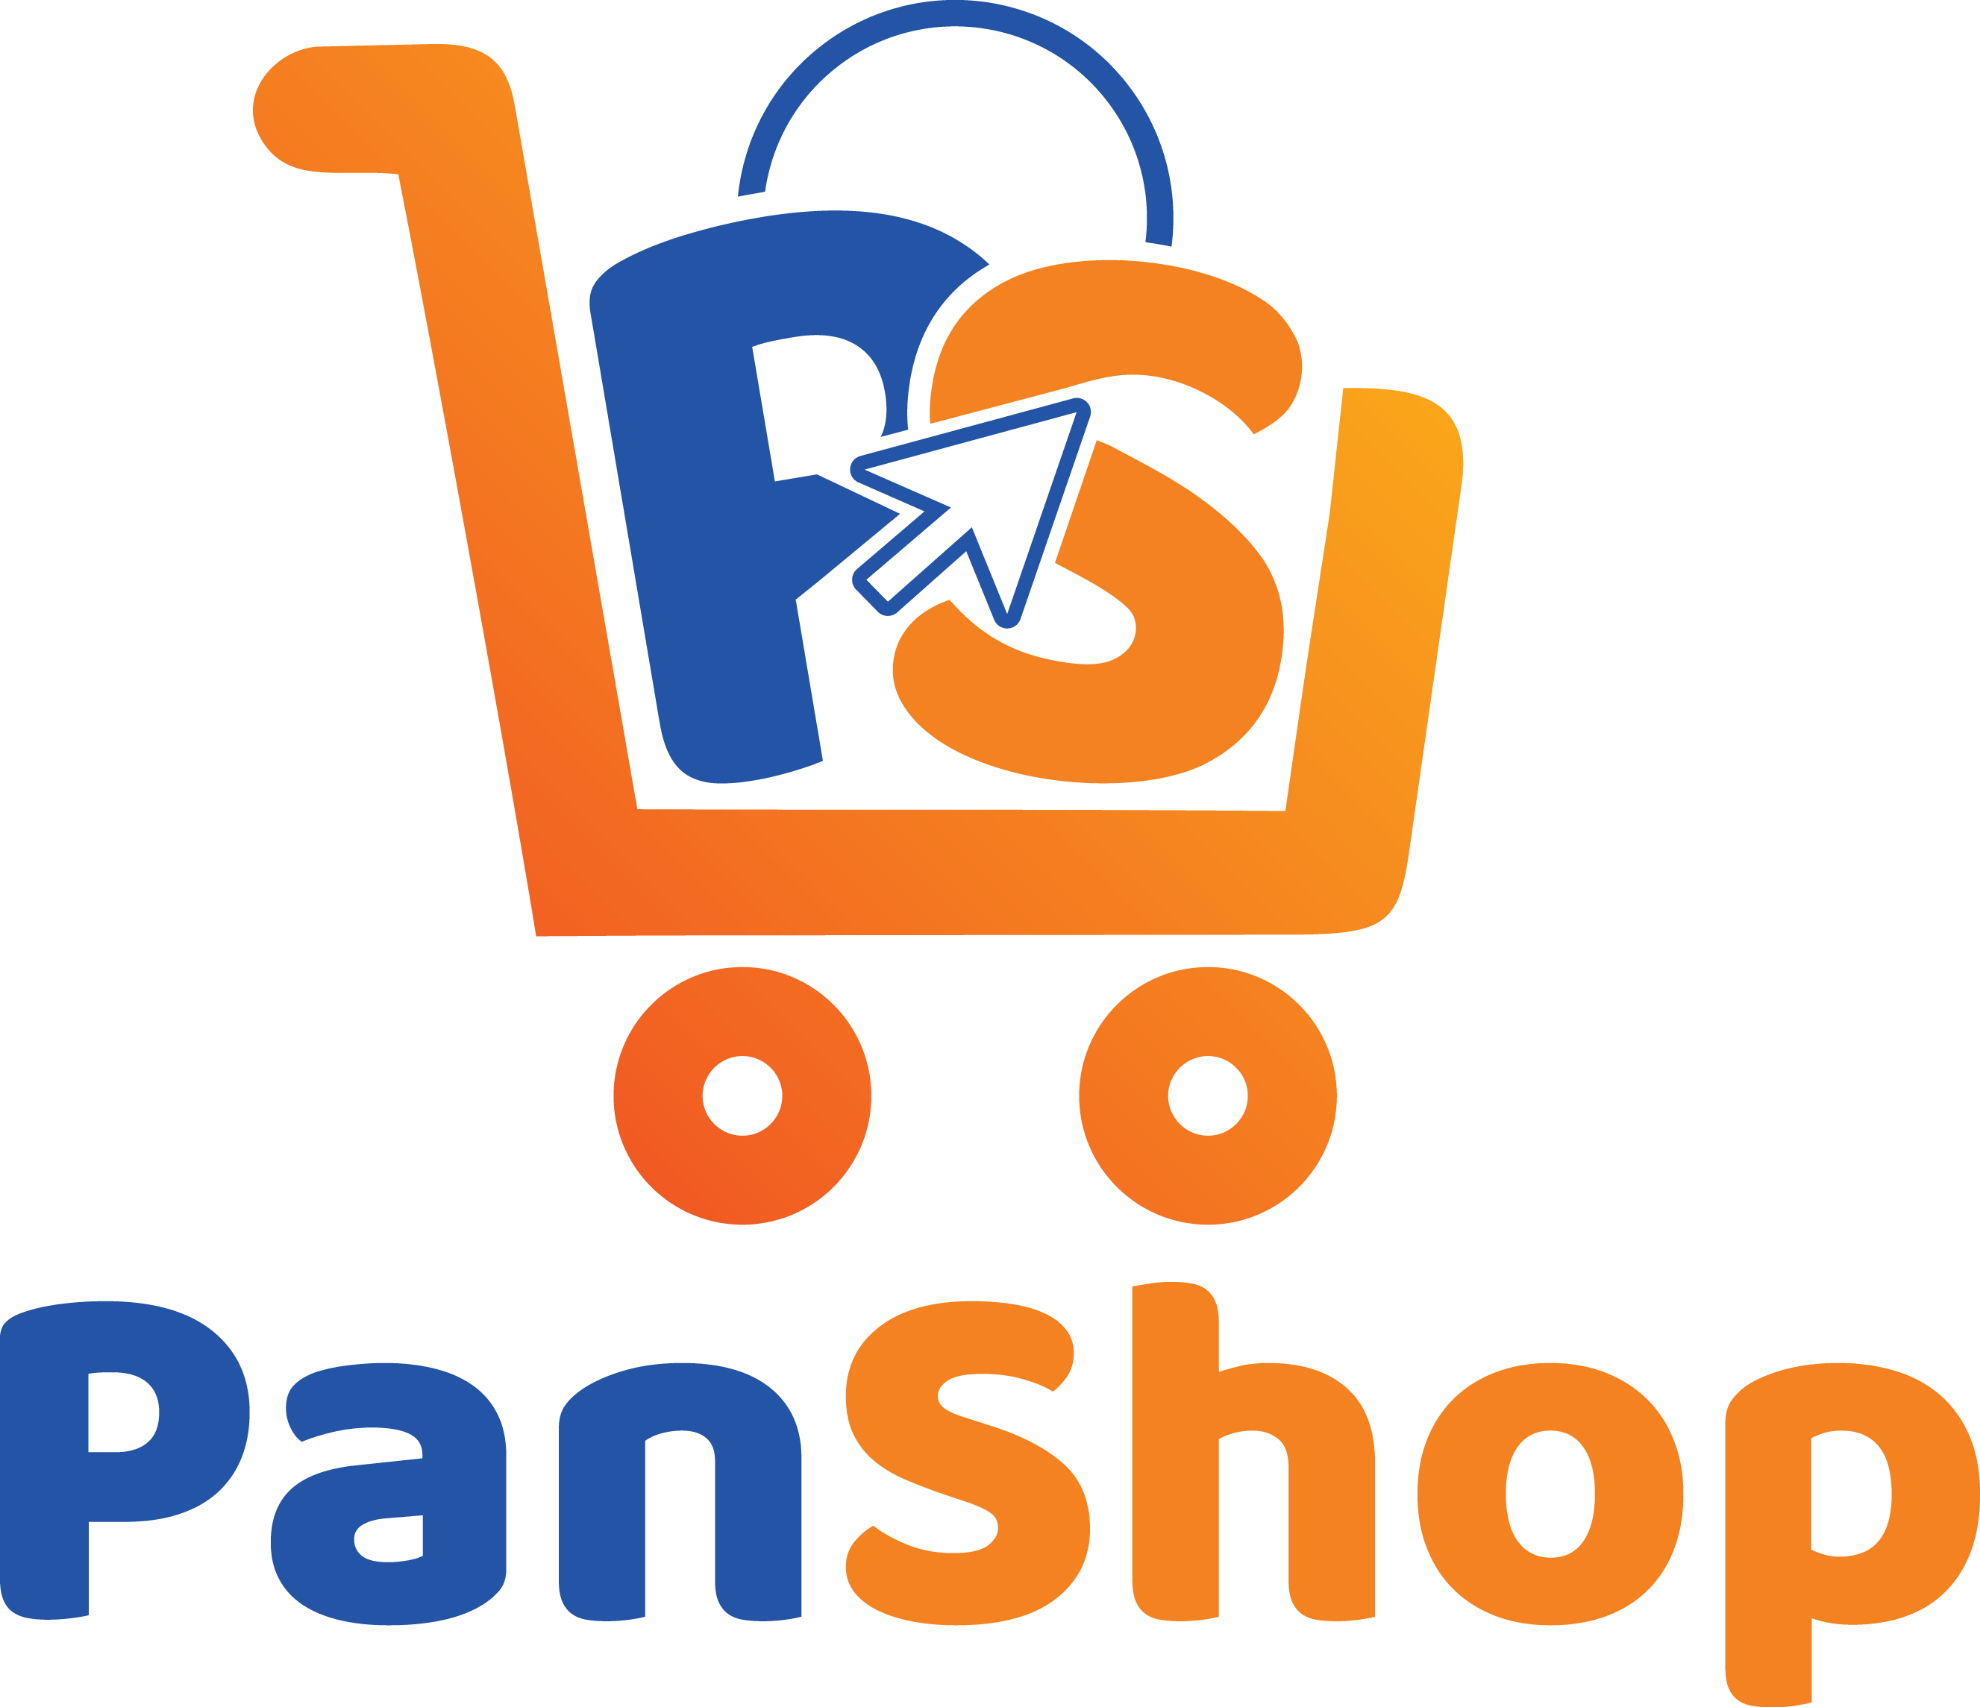 PanShop